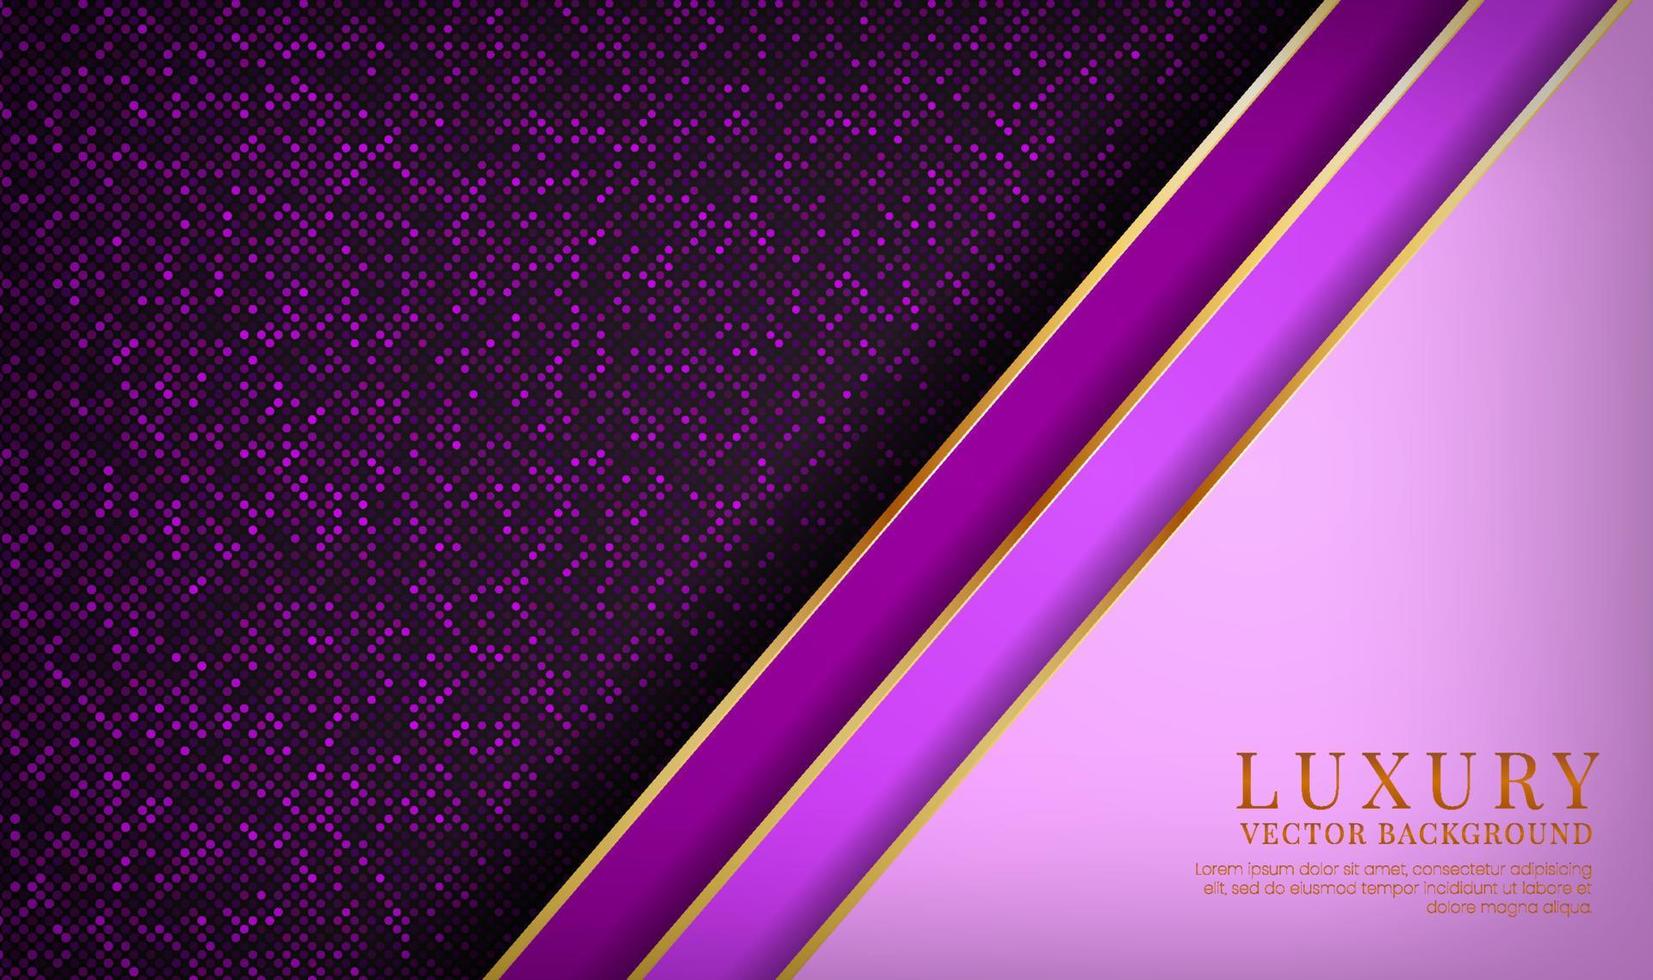 El fondo abstracto de lujo púrpura 3d se superpone en capas en el espacio oscuro con una decoración de efecto de rayas doradas. elemento de diseño gráfico concepto de estilo futuro para volante, tarjeta, portada de folleto o página de inicio vector